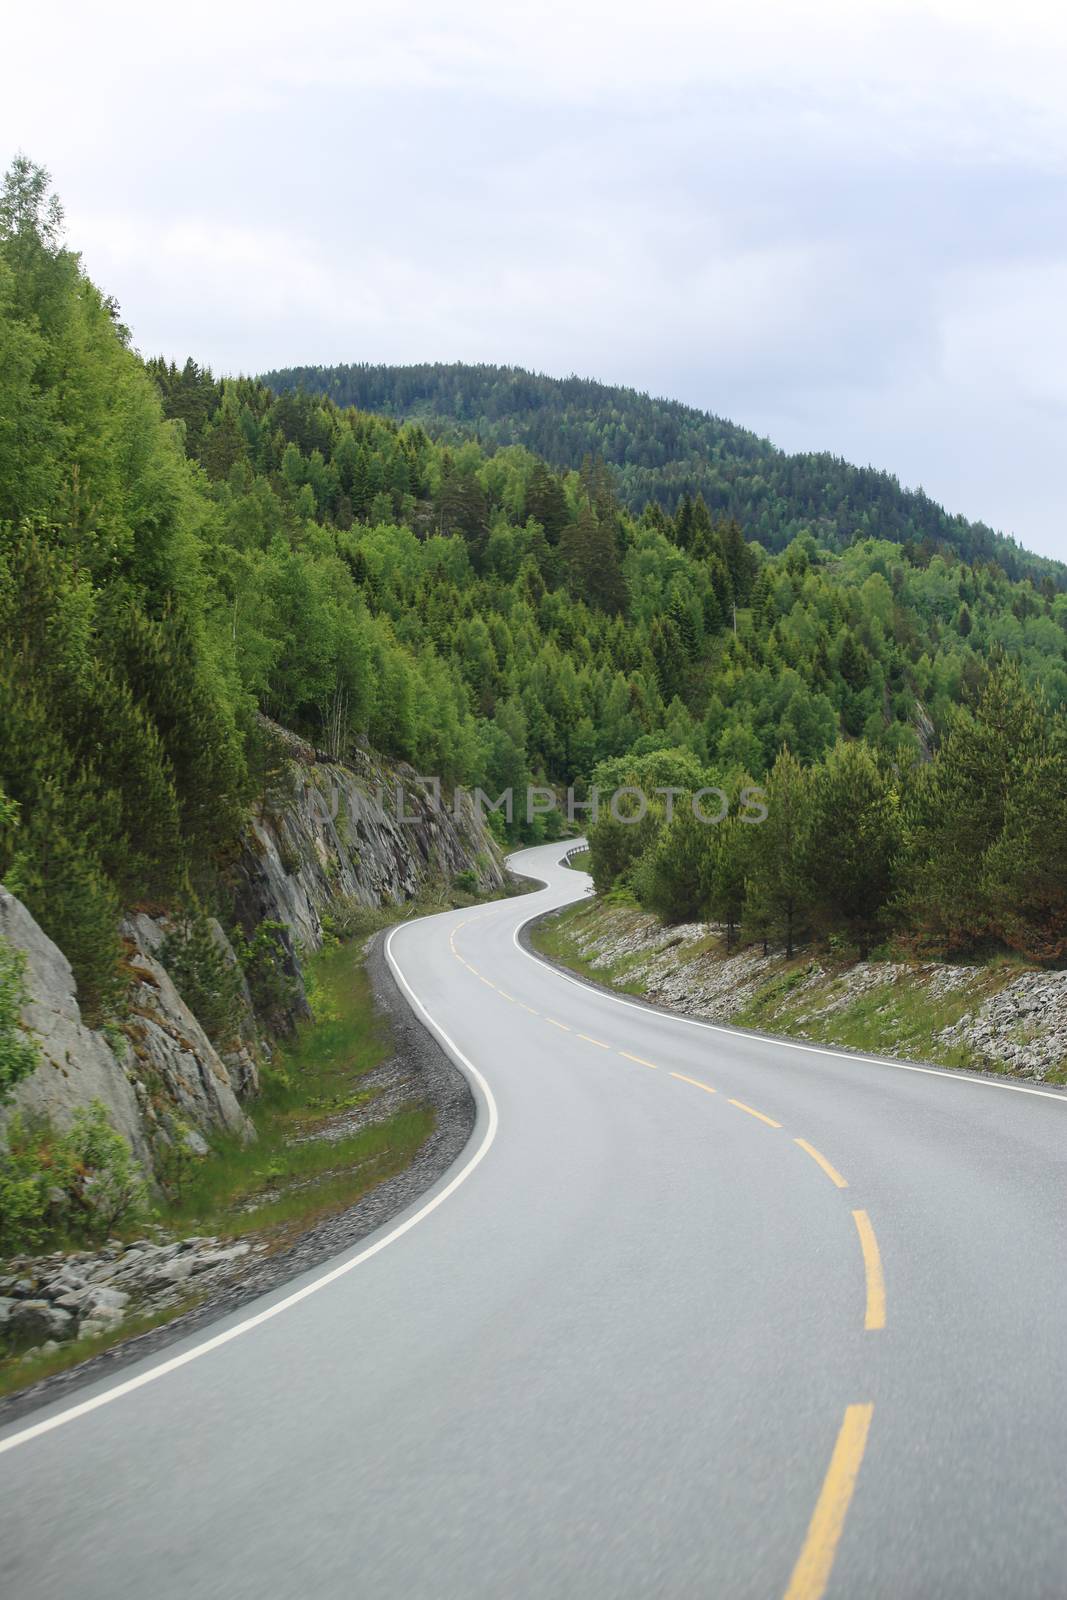 Mountain road, Norway by destillat